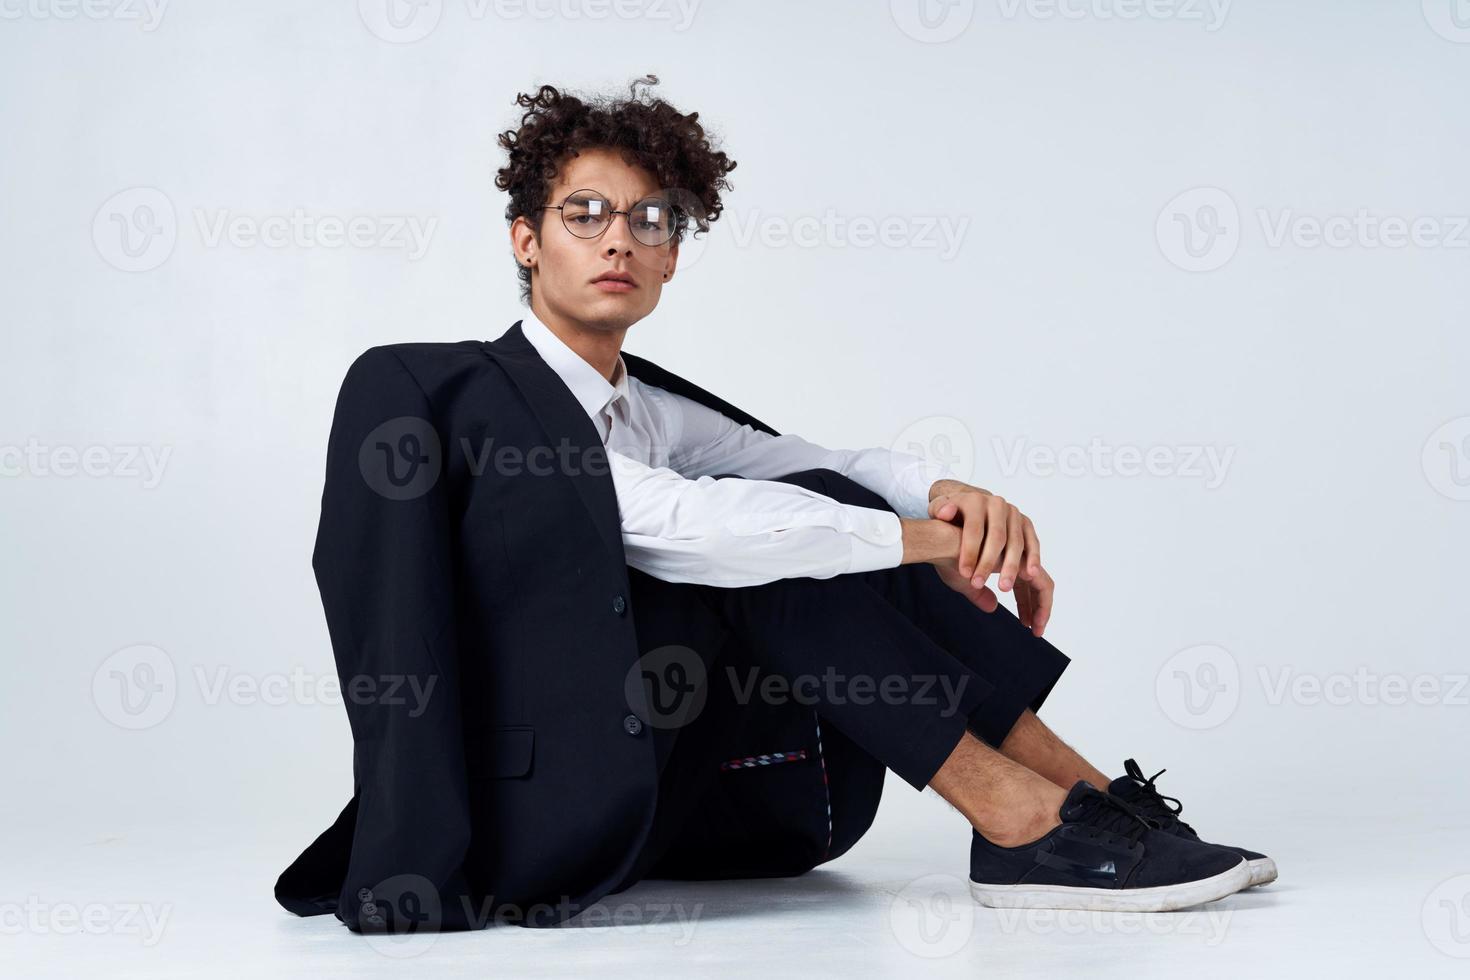 trendig kille med lockigt hår i en klassisk kostym och gymnastikskor på de golv inomhus fotografi studio foto